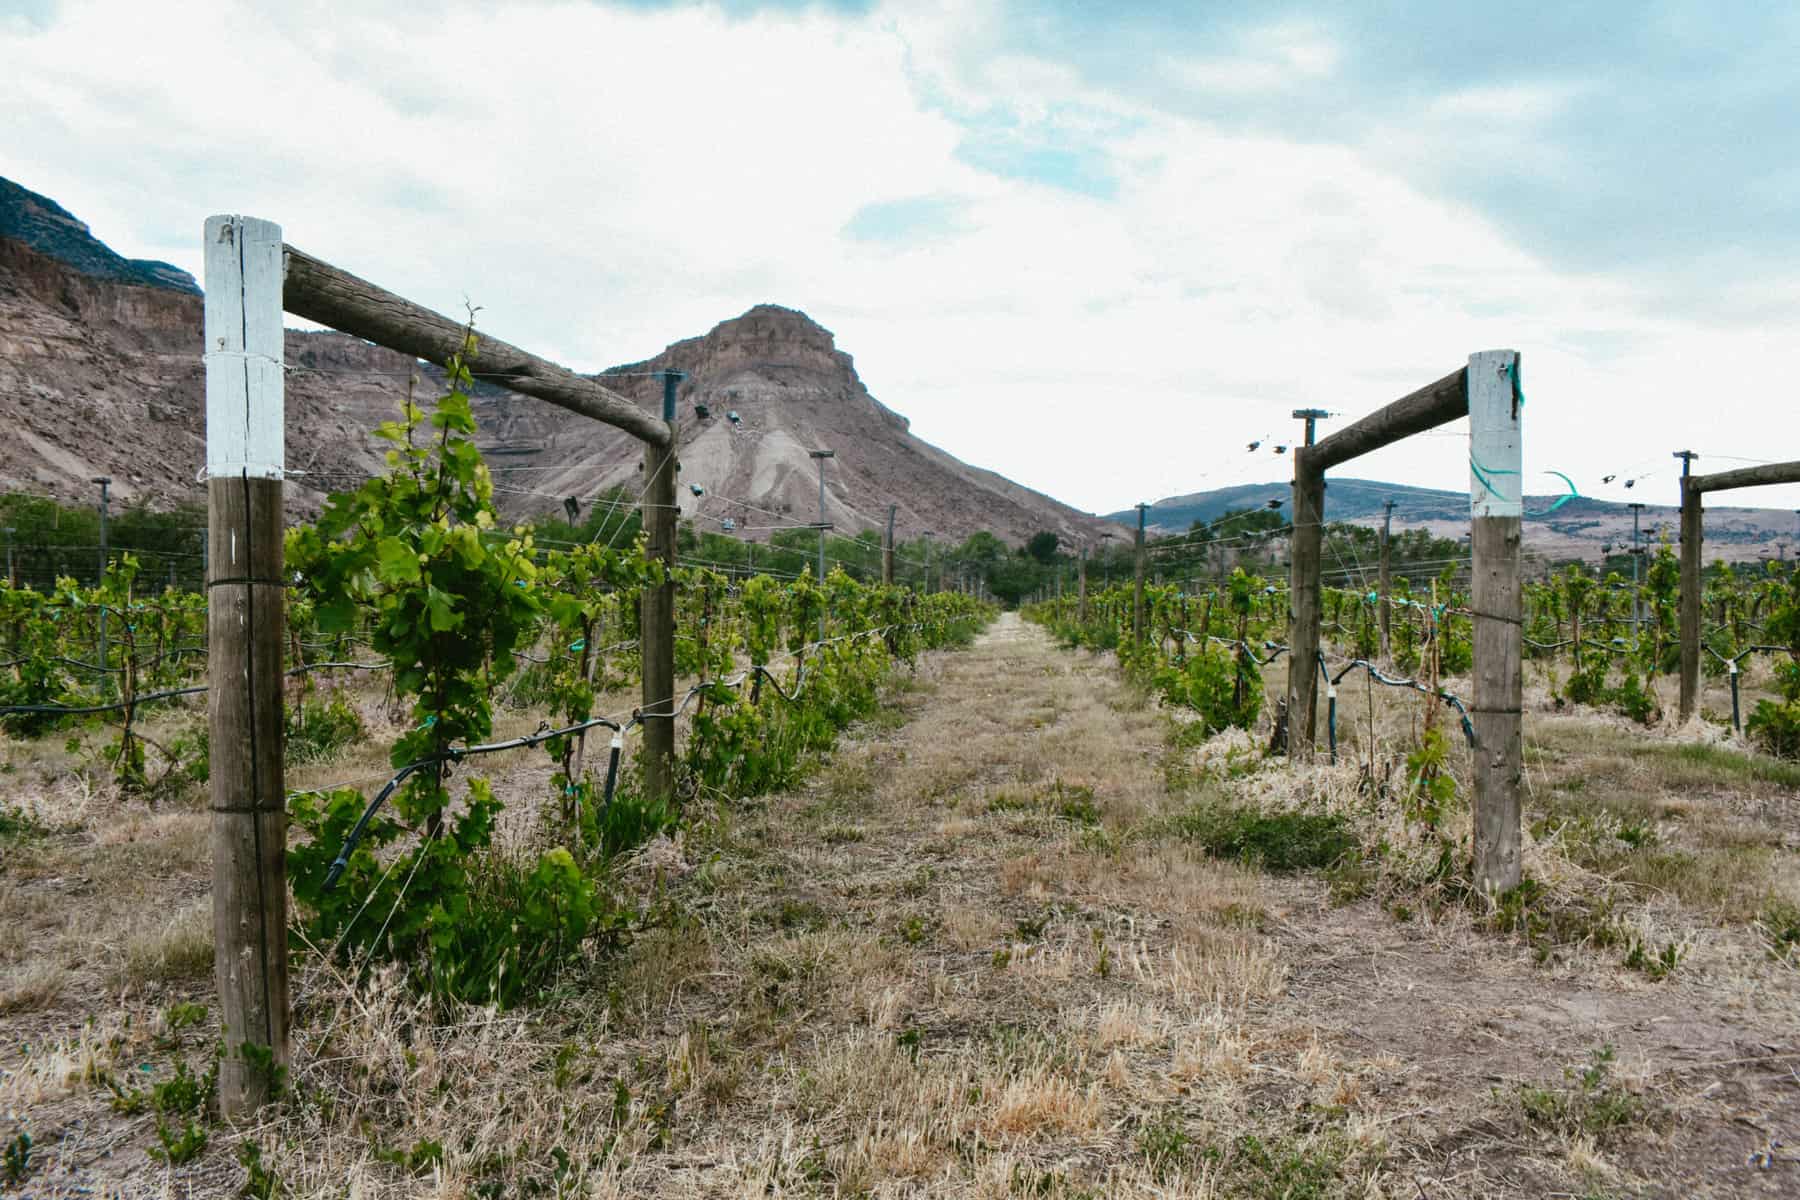 The vineyard rows in Palisade, Colorado.